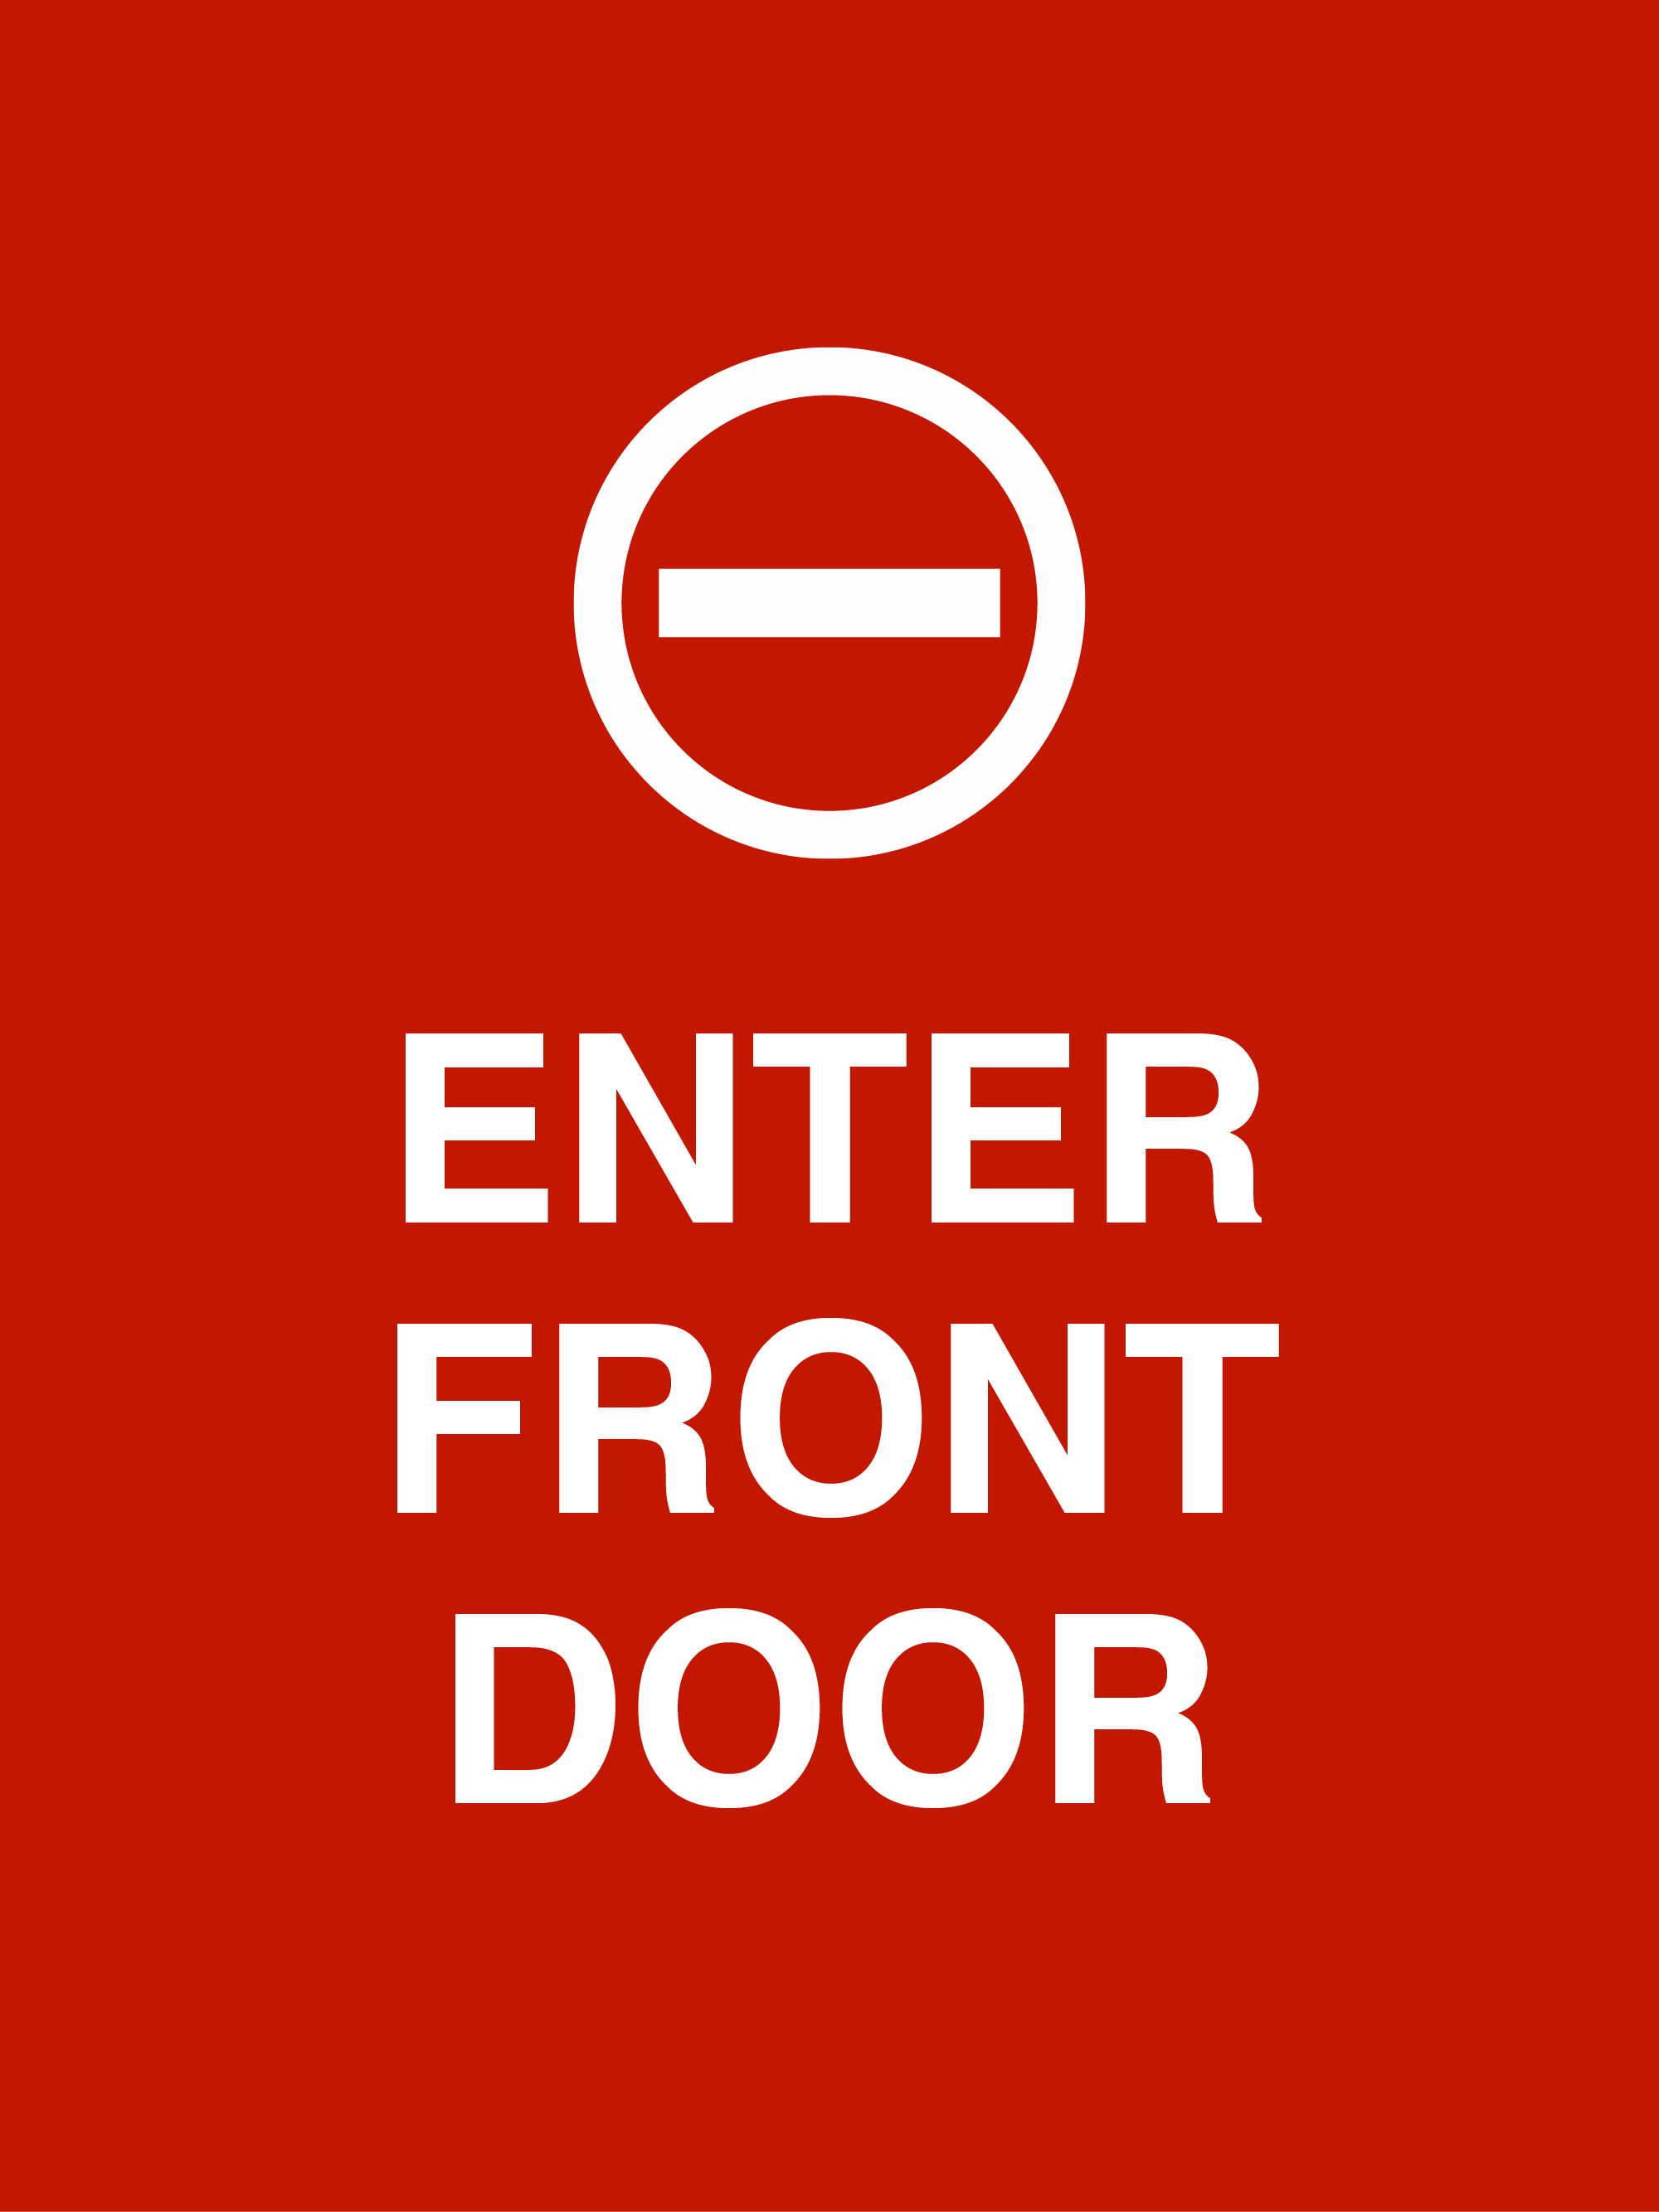 Enter front door